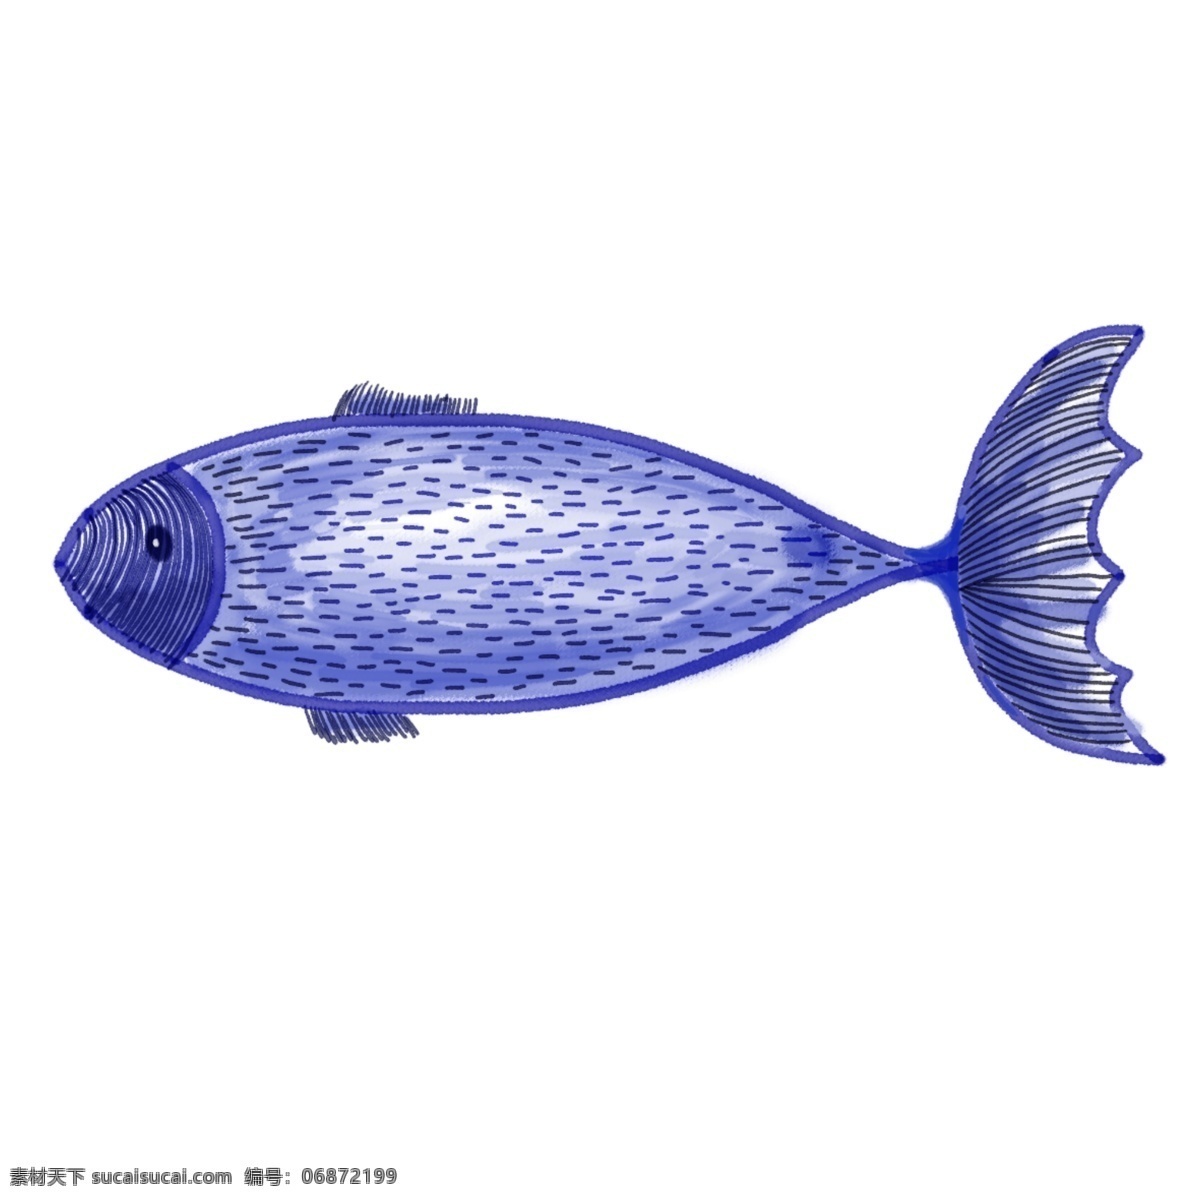 大气 蓝色 海洋 线条 鱼 装饰 元素 海洋生物 线条鱼 装饰物品 水彩手绘